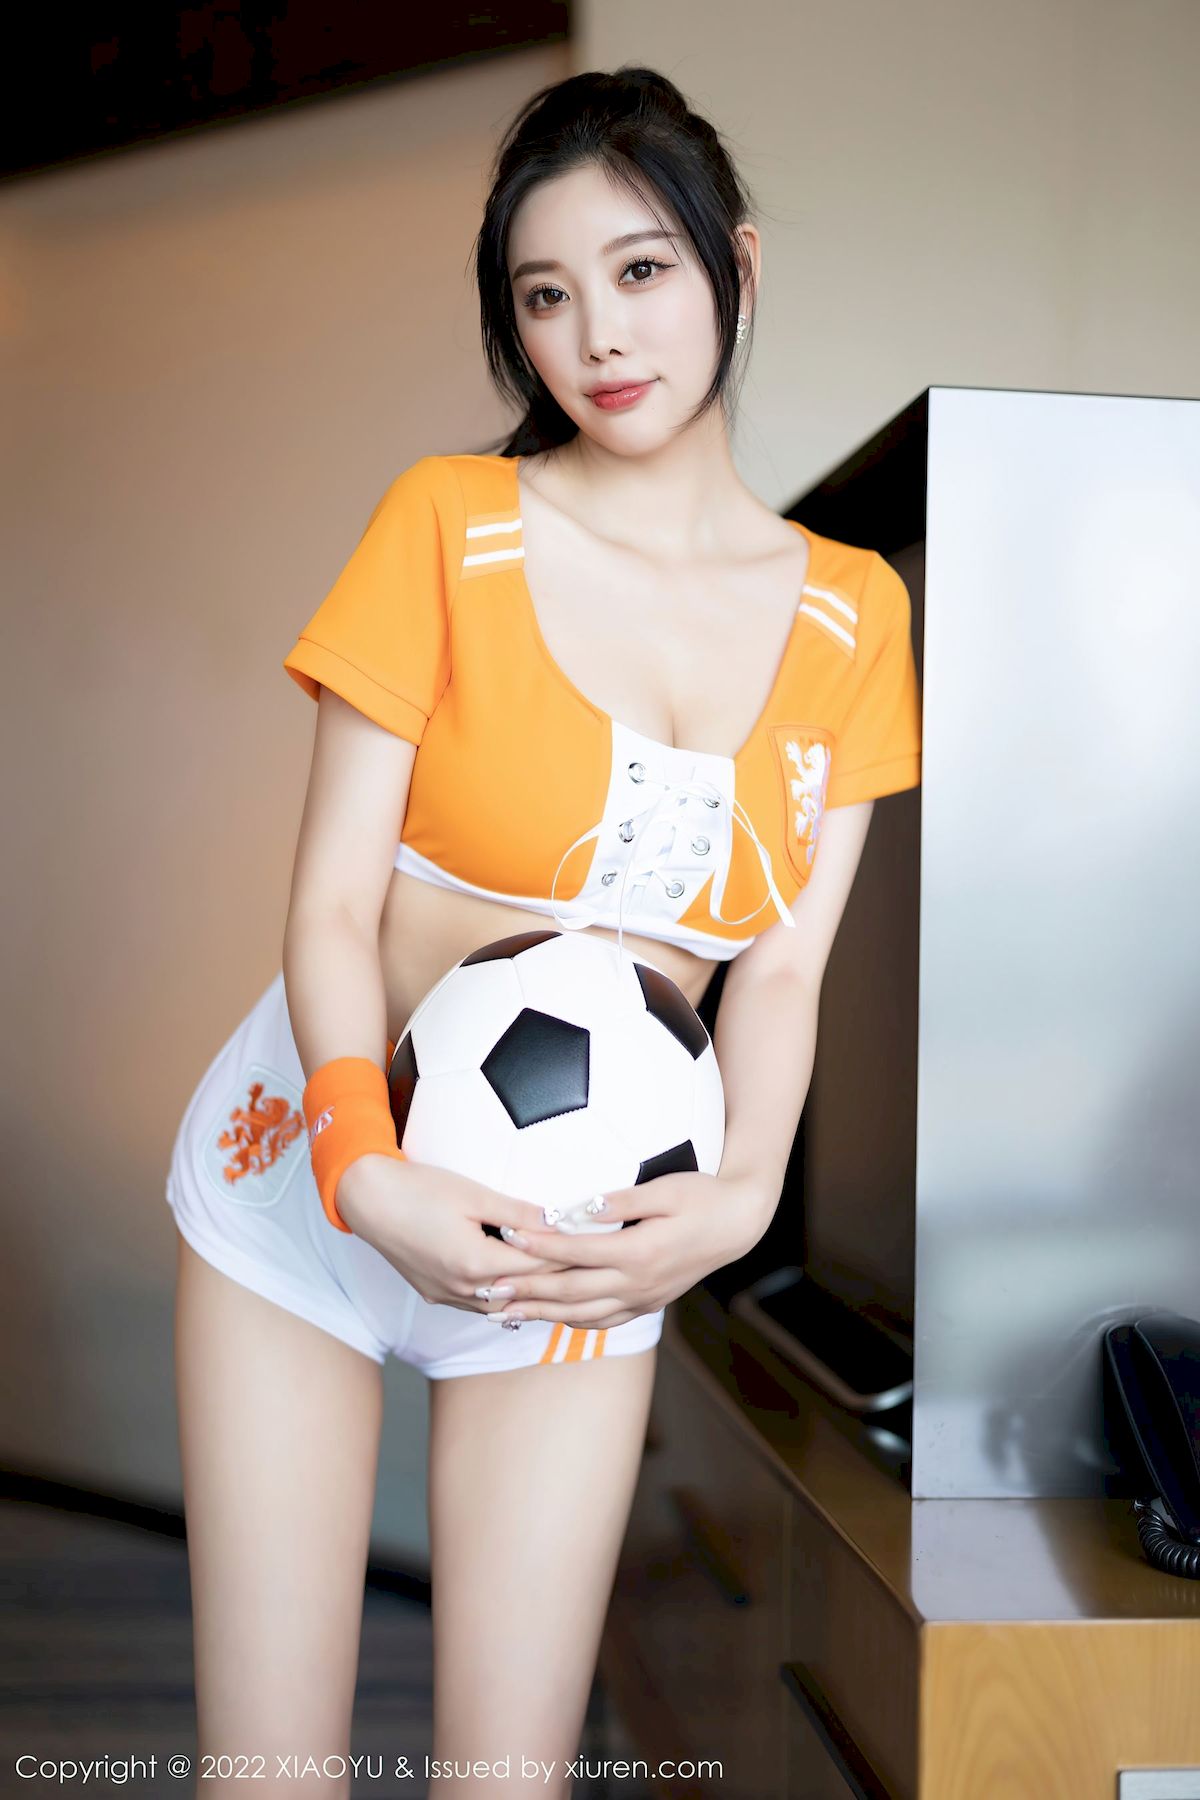 杨晨晨Yome足球宝贝橙色运动服饰心愿旅拍